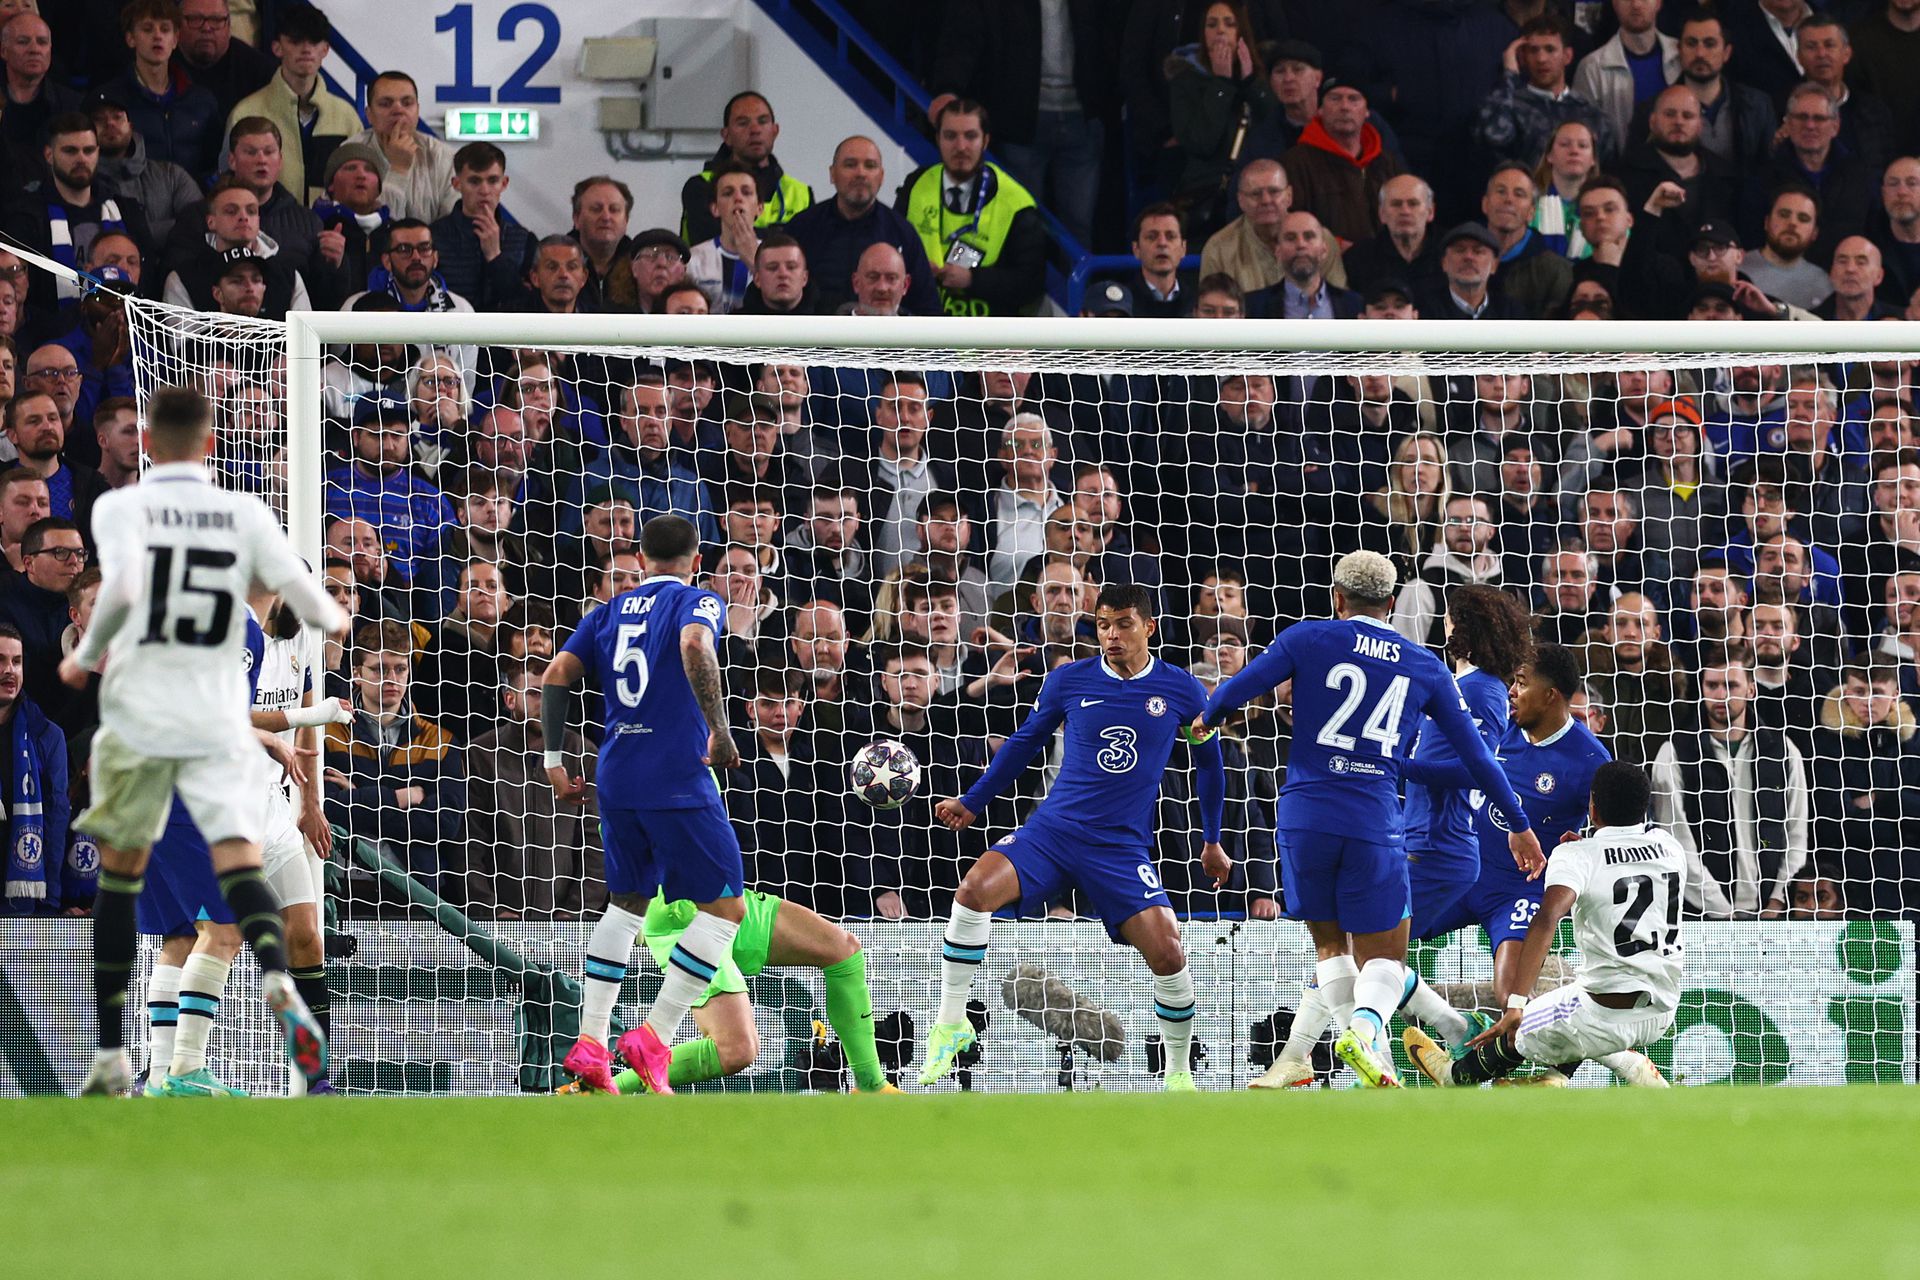 A pillanat, amikor elcsendesült a Stamford Bridge: Rodrygo lábát már elhagyta a labda, a gól után összesítésben már három találattal vezetett a Real Madrid. Fotó: Getty Images